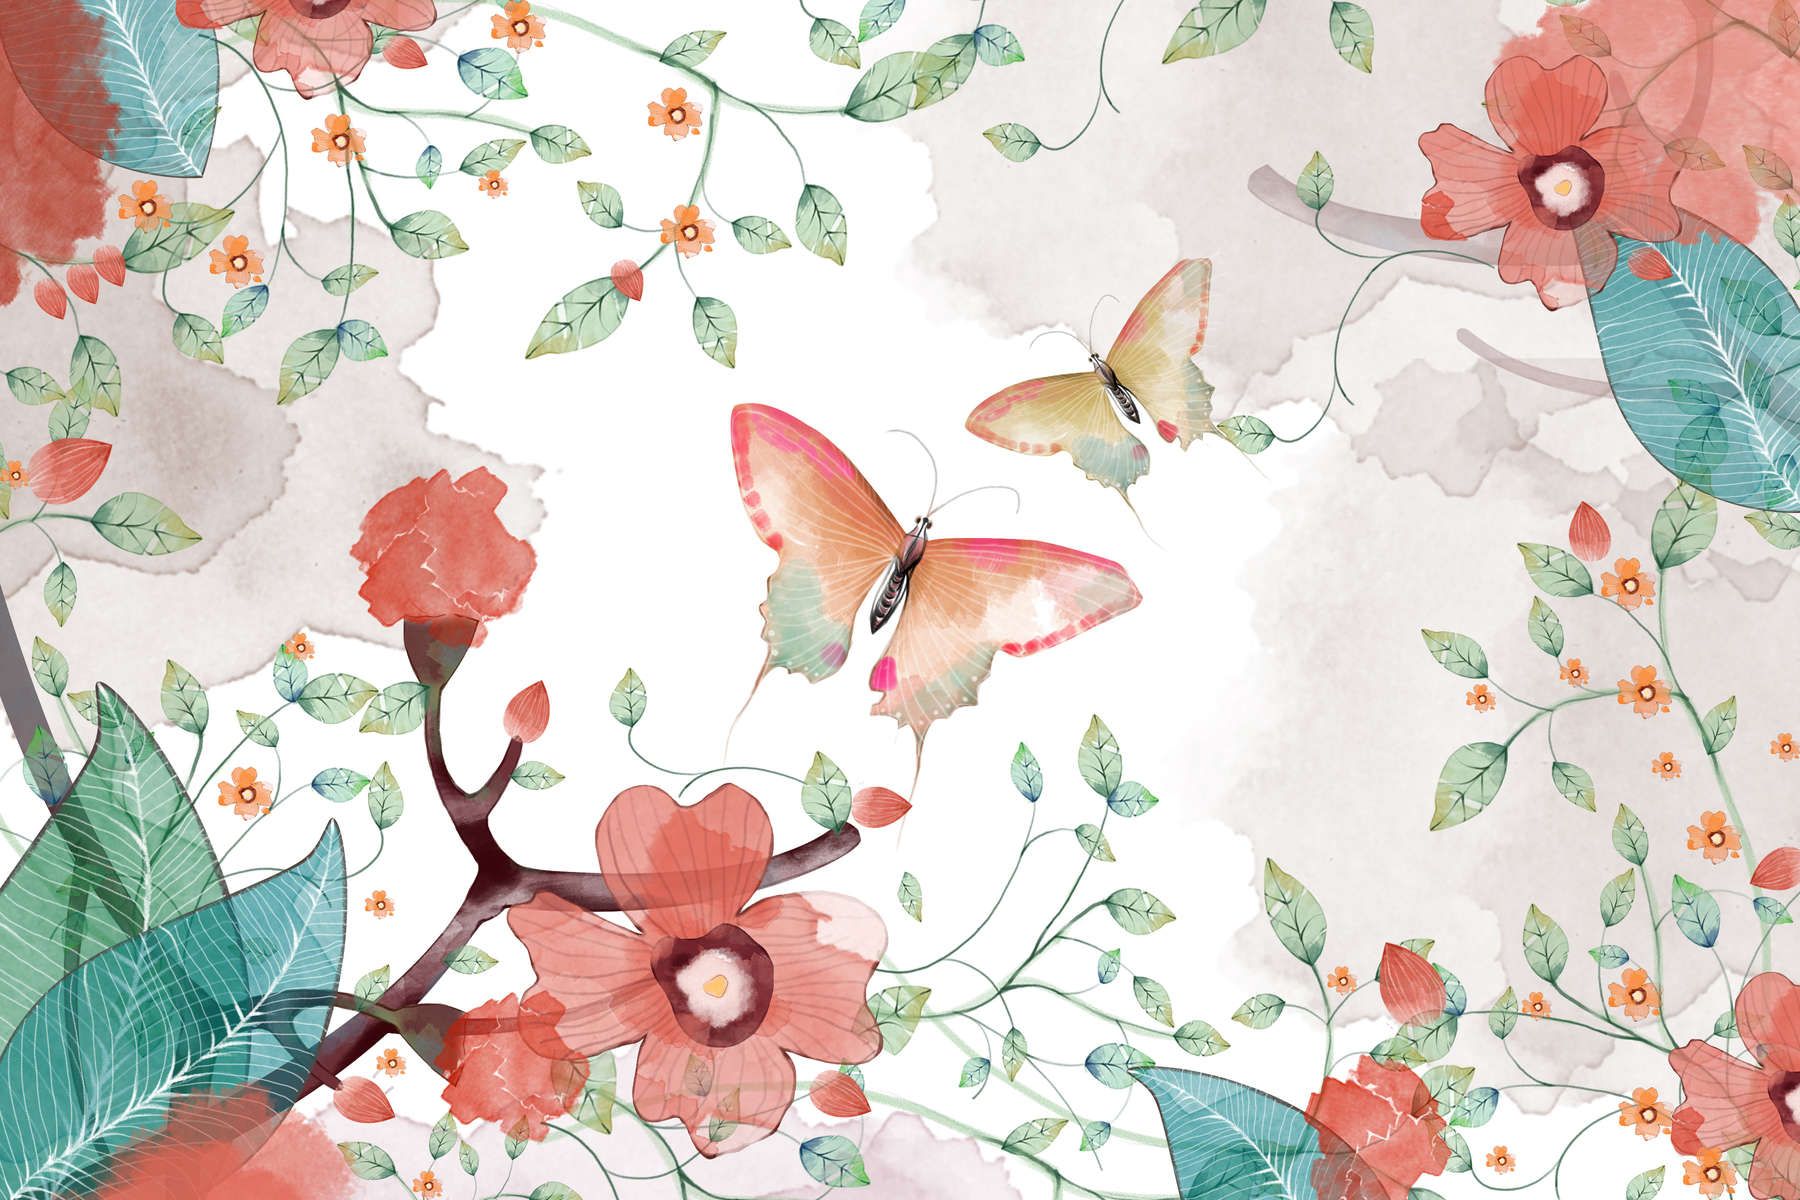             Digital behang bloemen met bladeren en vlinders - Glad & mat vlies
        